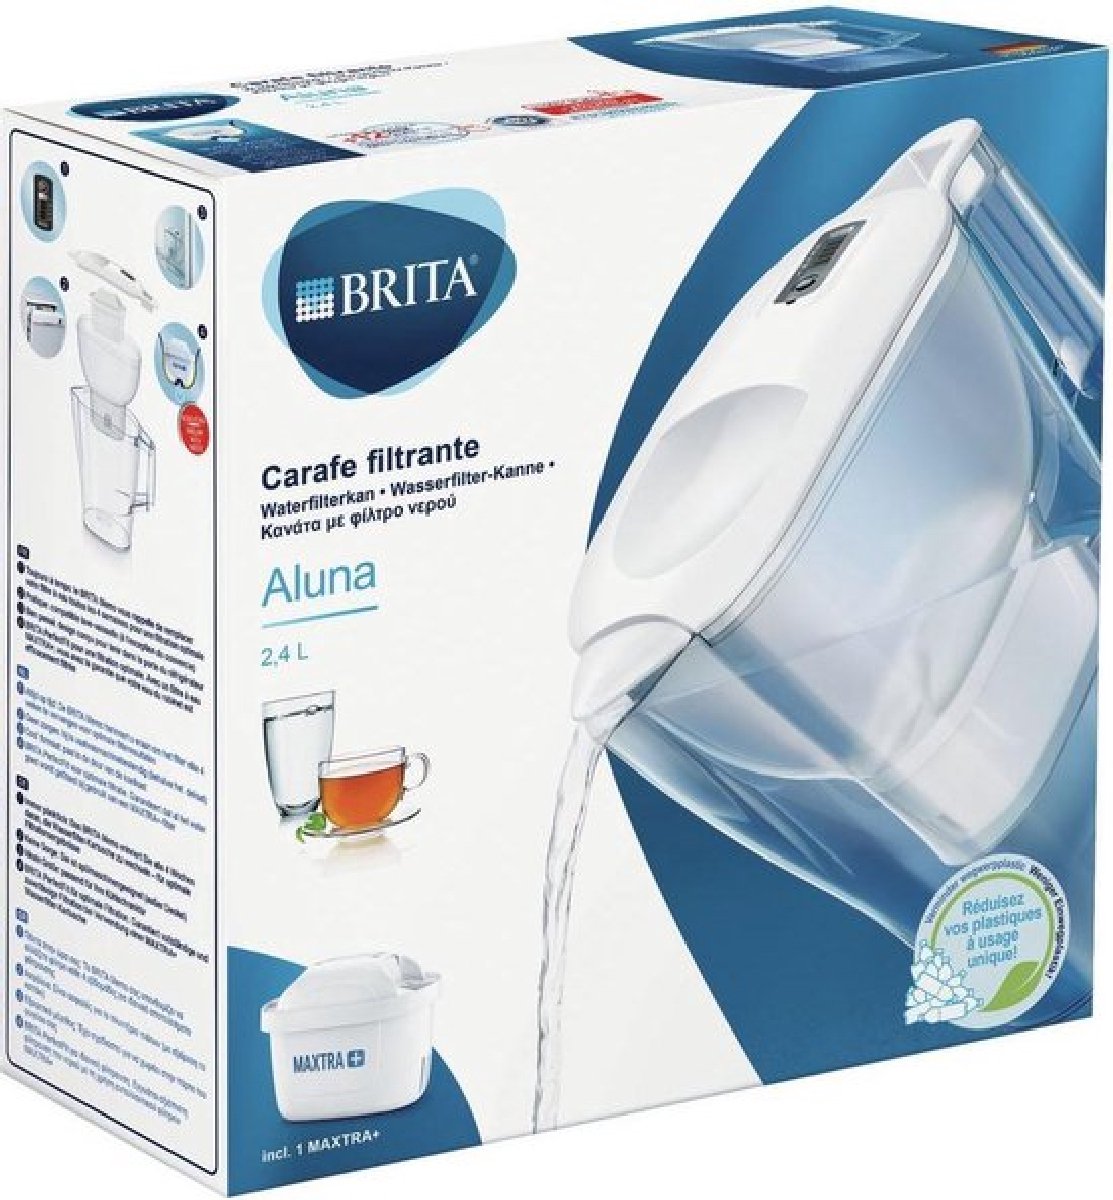 Carafe filtrante à eau Brita Aluna White (2,4 L) incl. 1 x filtre tout-en